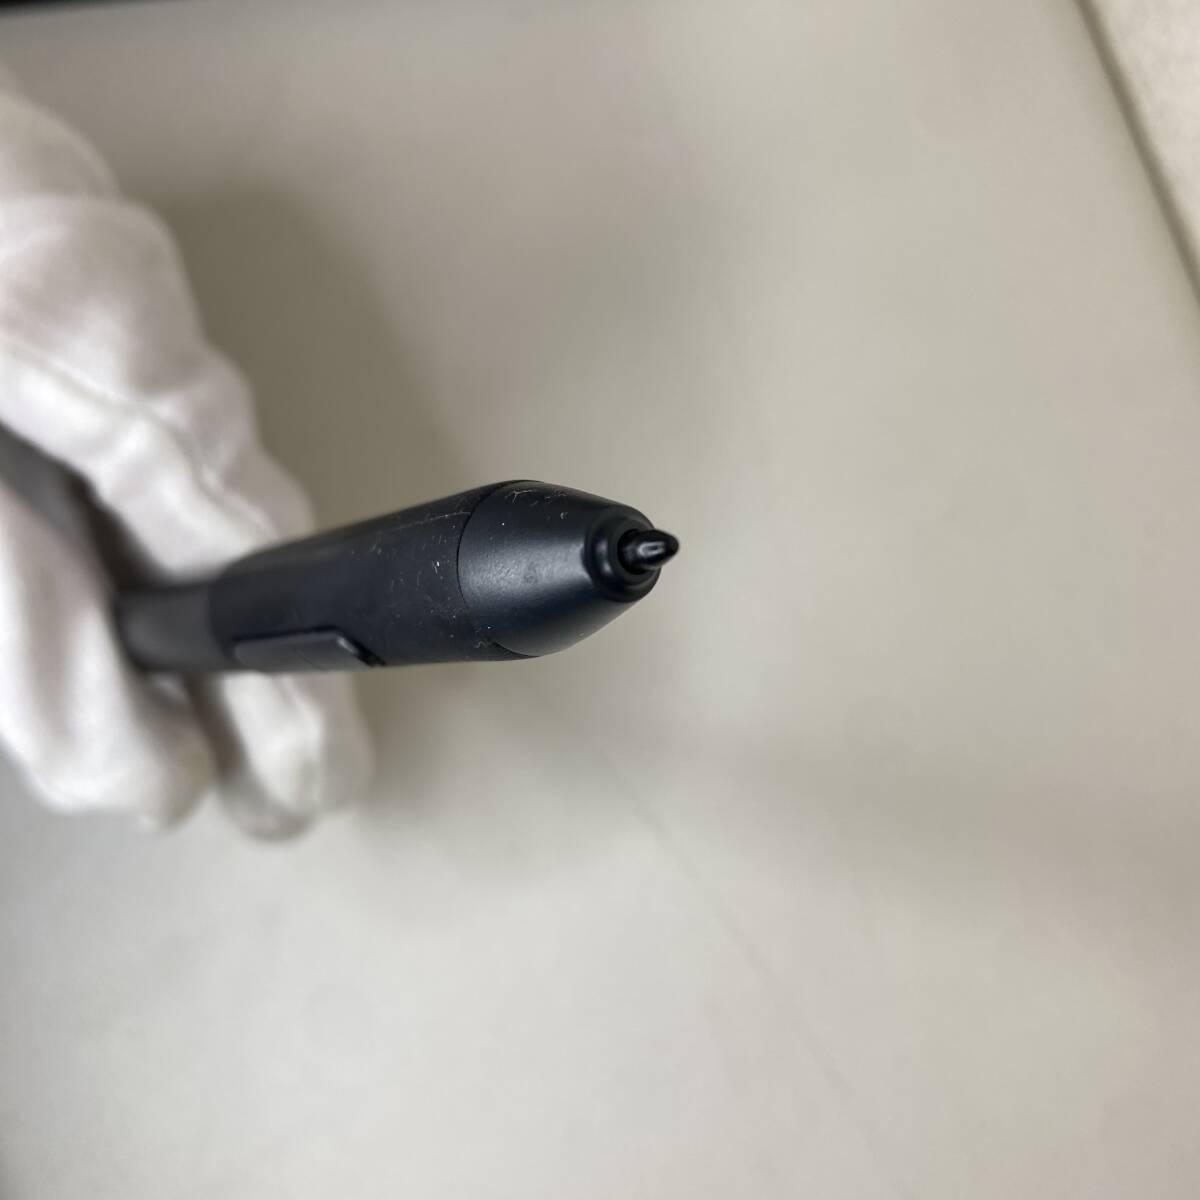  жидкость ... Pen Display PD1161 GAOMON  ручка   дисплей  